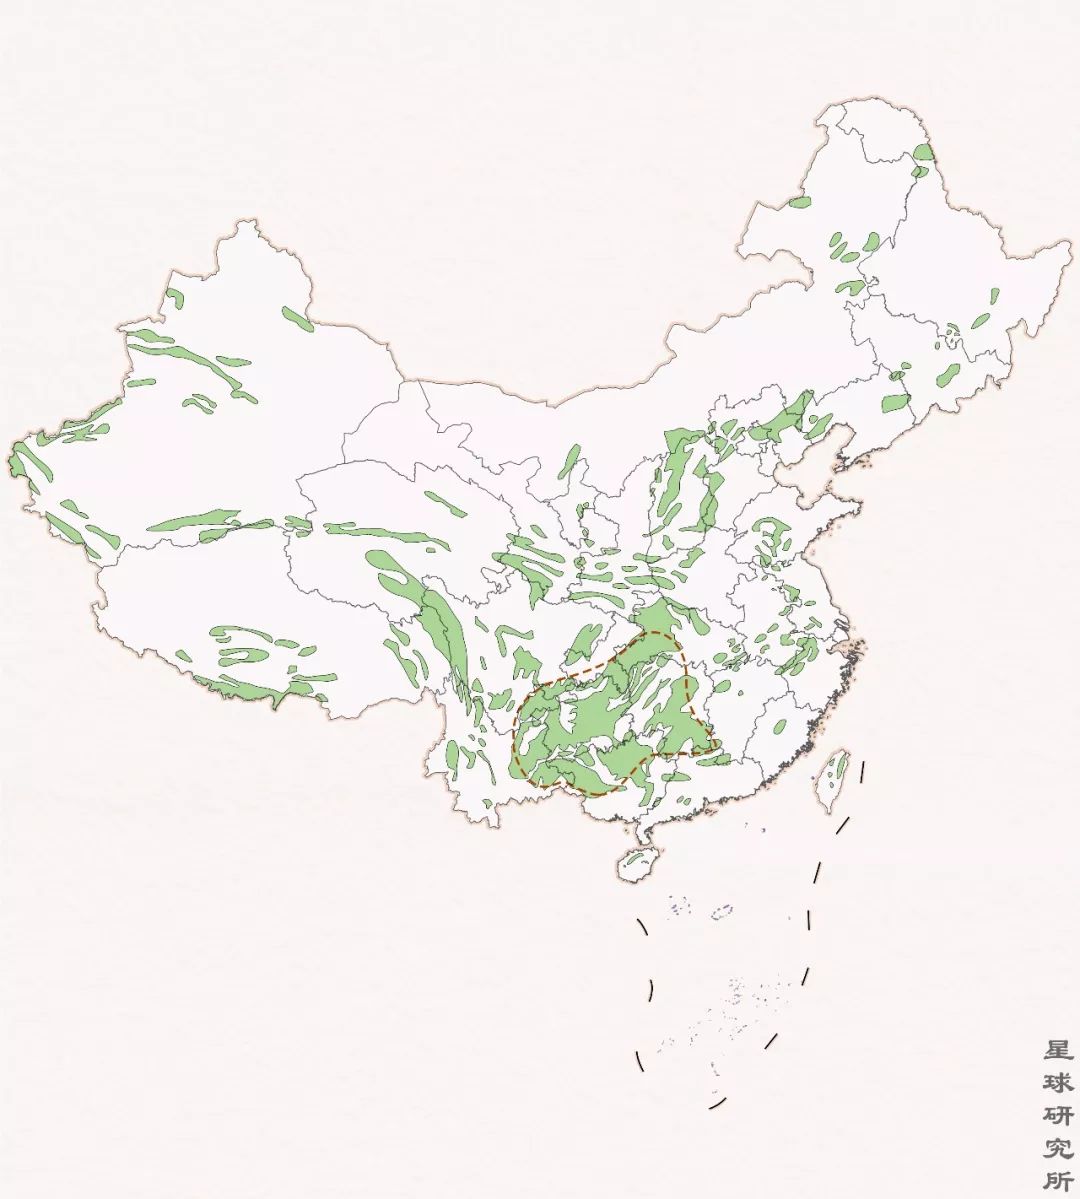 中国才是喀斯特地貌的集大成者,尤其在南方滇,桂,黔,川,湘诸省区地表